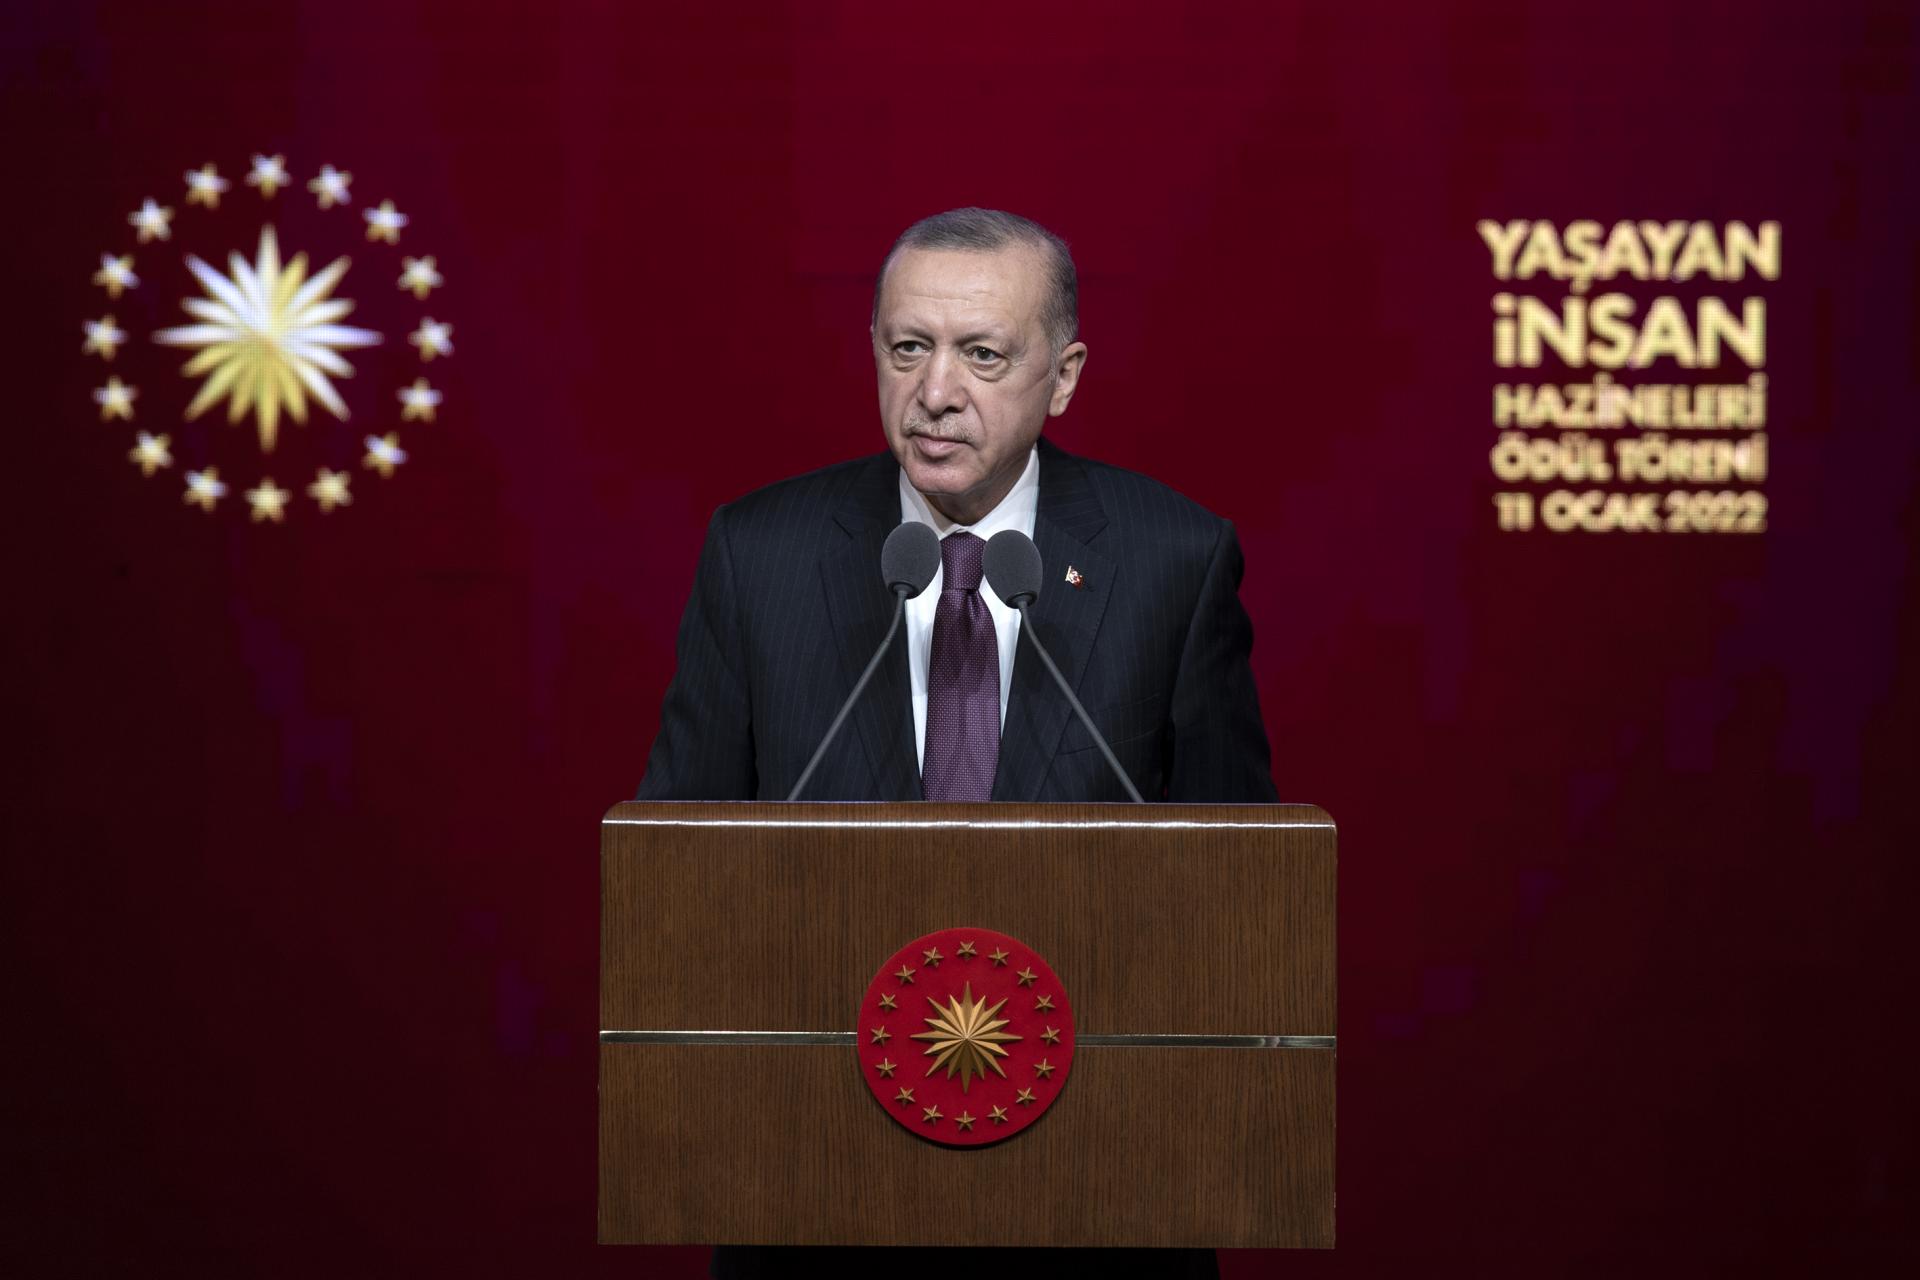 اردوغان: تورکیه قدرتمند با حمایت گنجینه انسانی بینظیرش ساخته خواهد شد